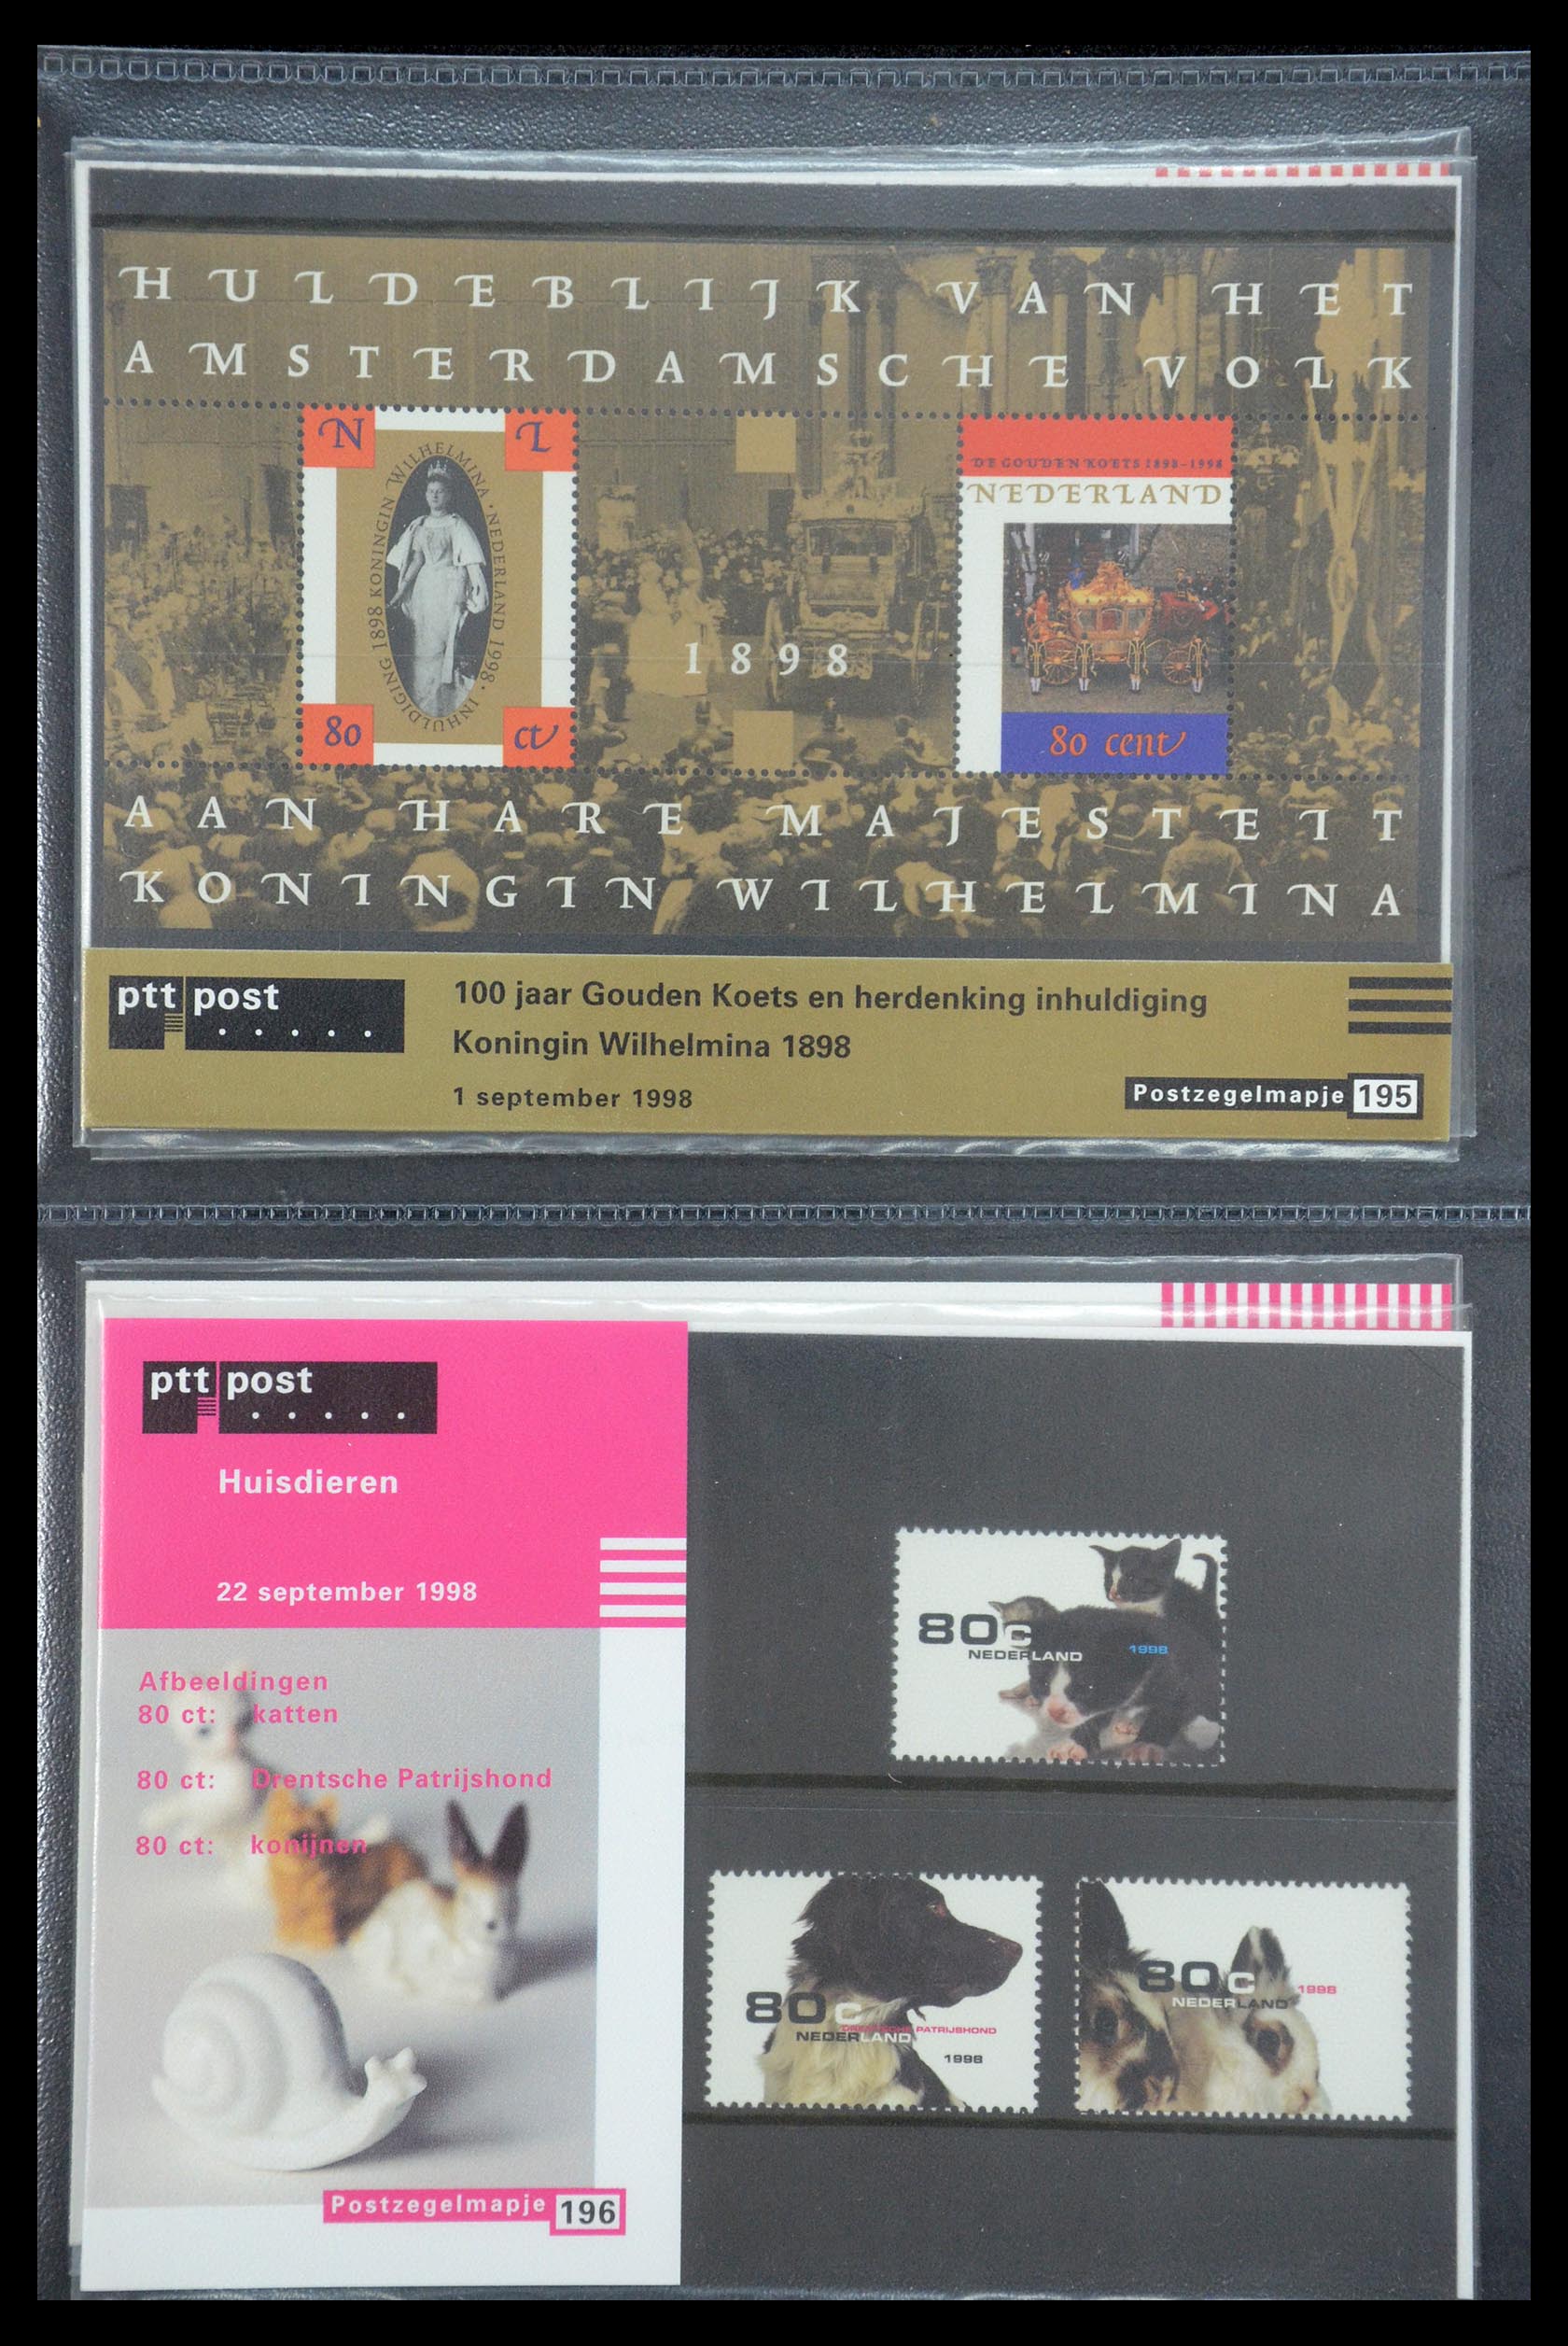 35187 100 - Stamp Collection 35187 Netherlands PTT presentation packs 1982-2019!